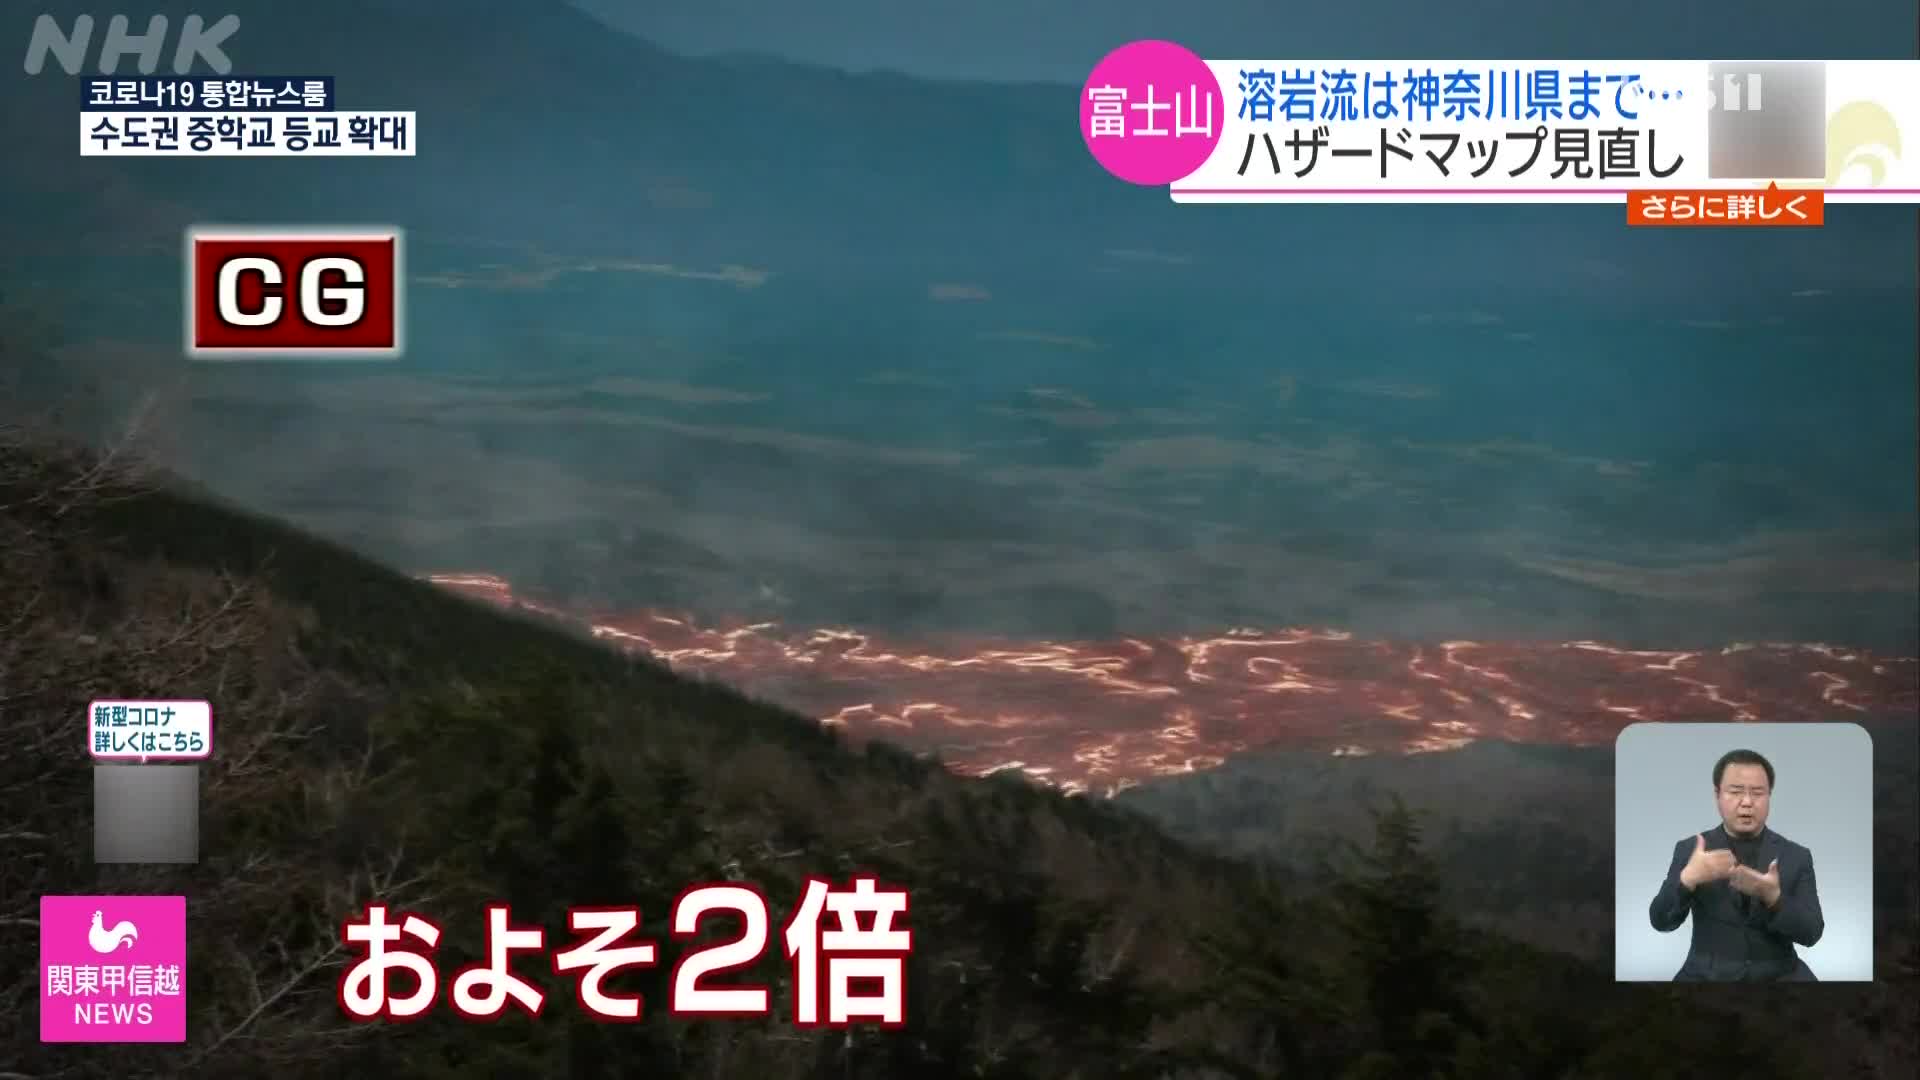 후지산 해저드맵 개정, 가나가와현까지 용암 도달